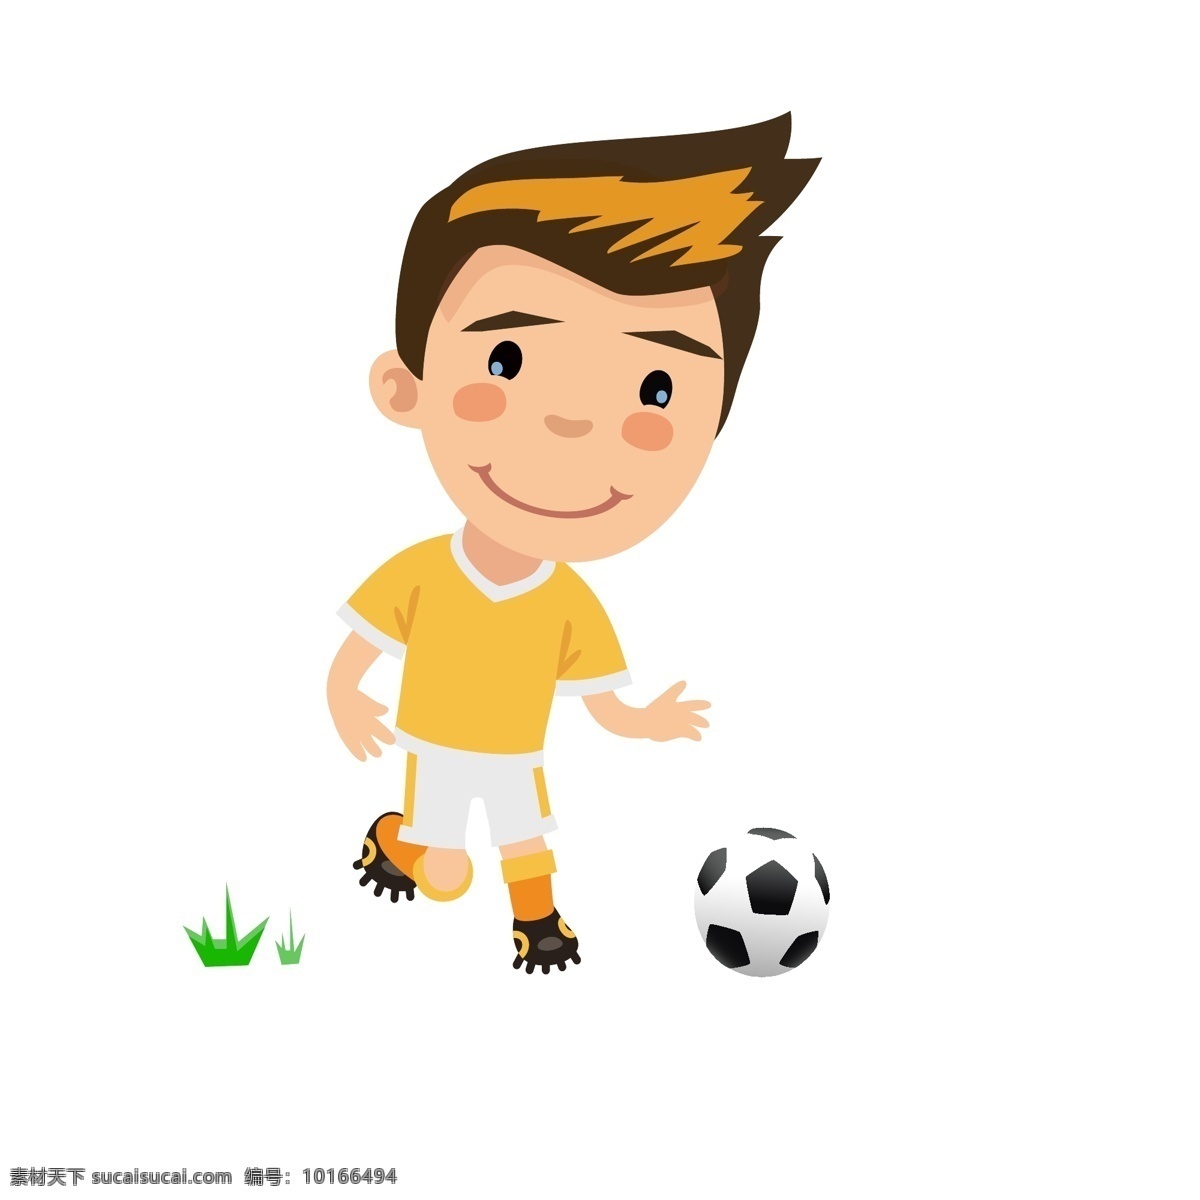 世界杯 人物 矢量图 源文件 足球 运动员 卡通